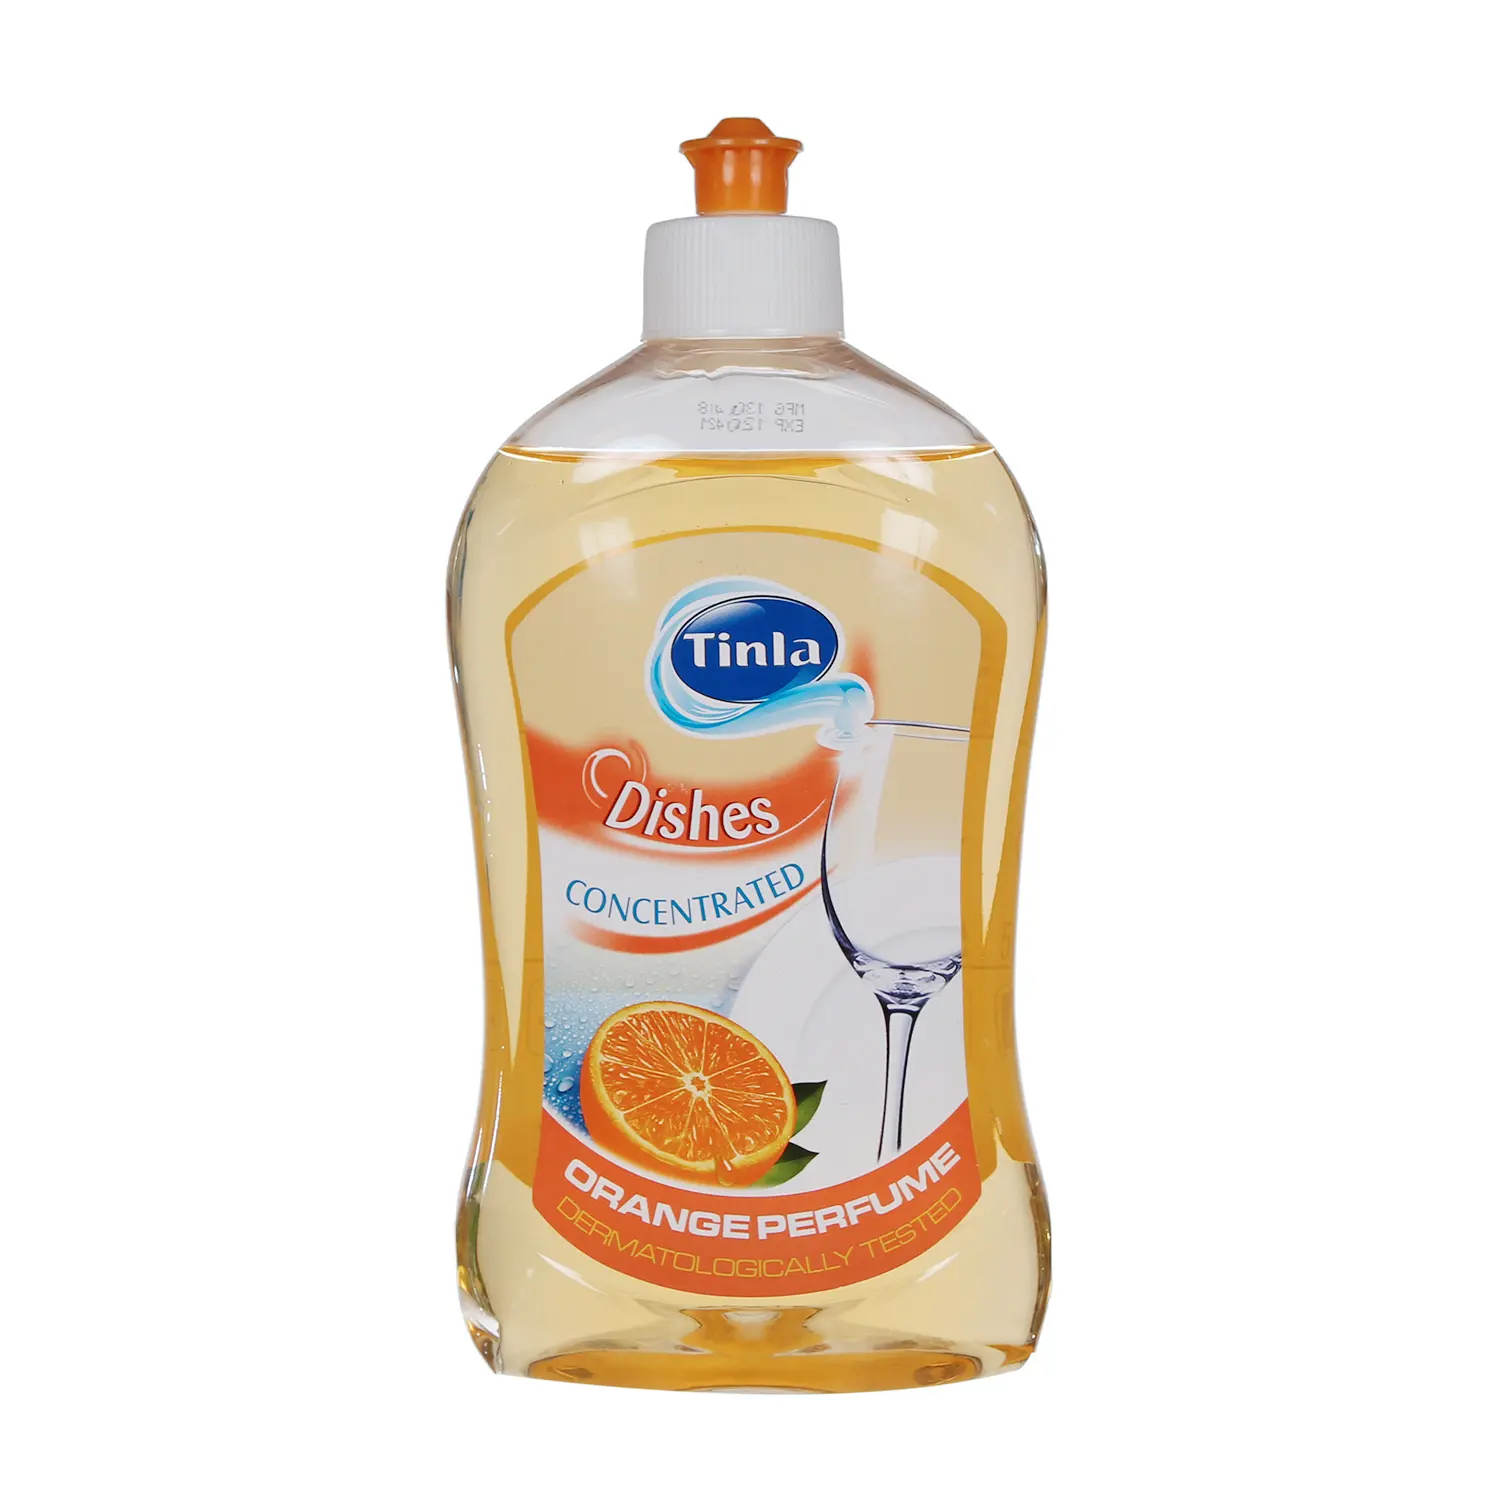 Detergente líquido para lavar platos, botella de Mascota, naranja, 500ml, precio de fábrica